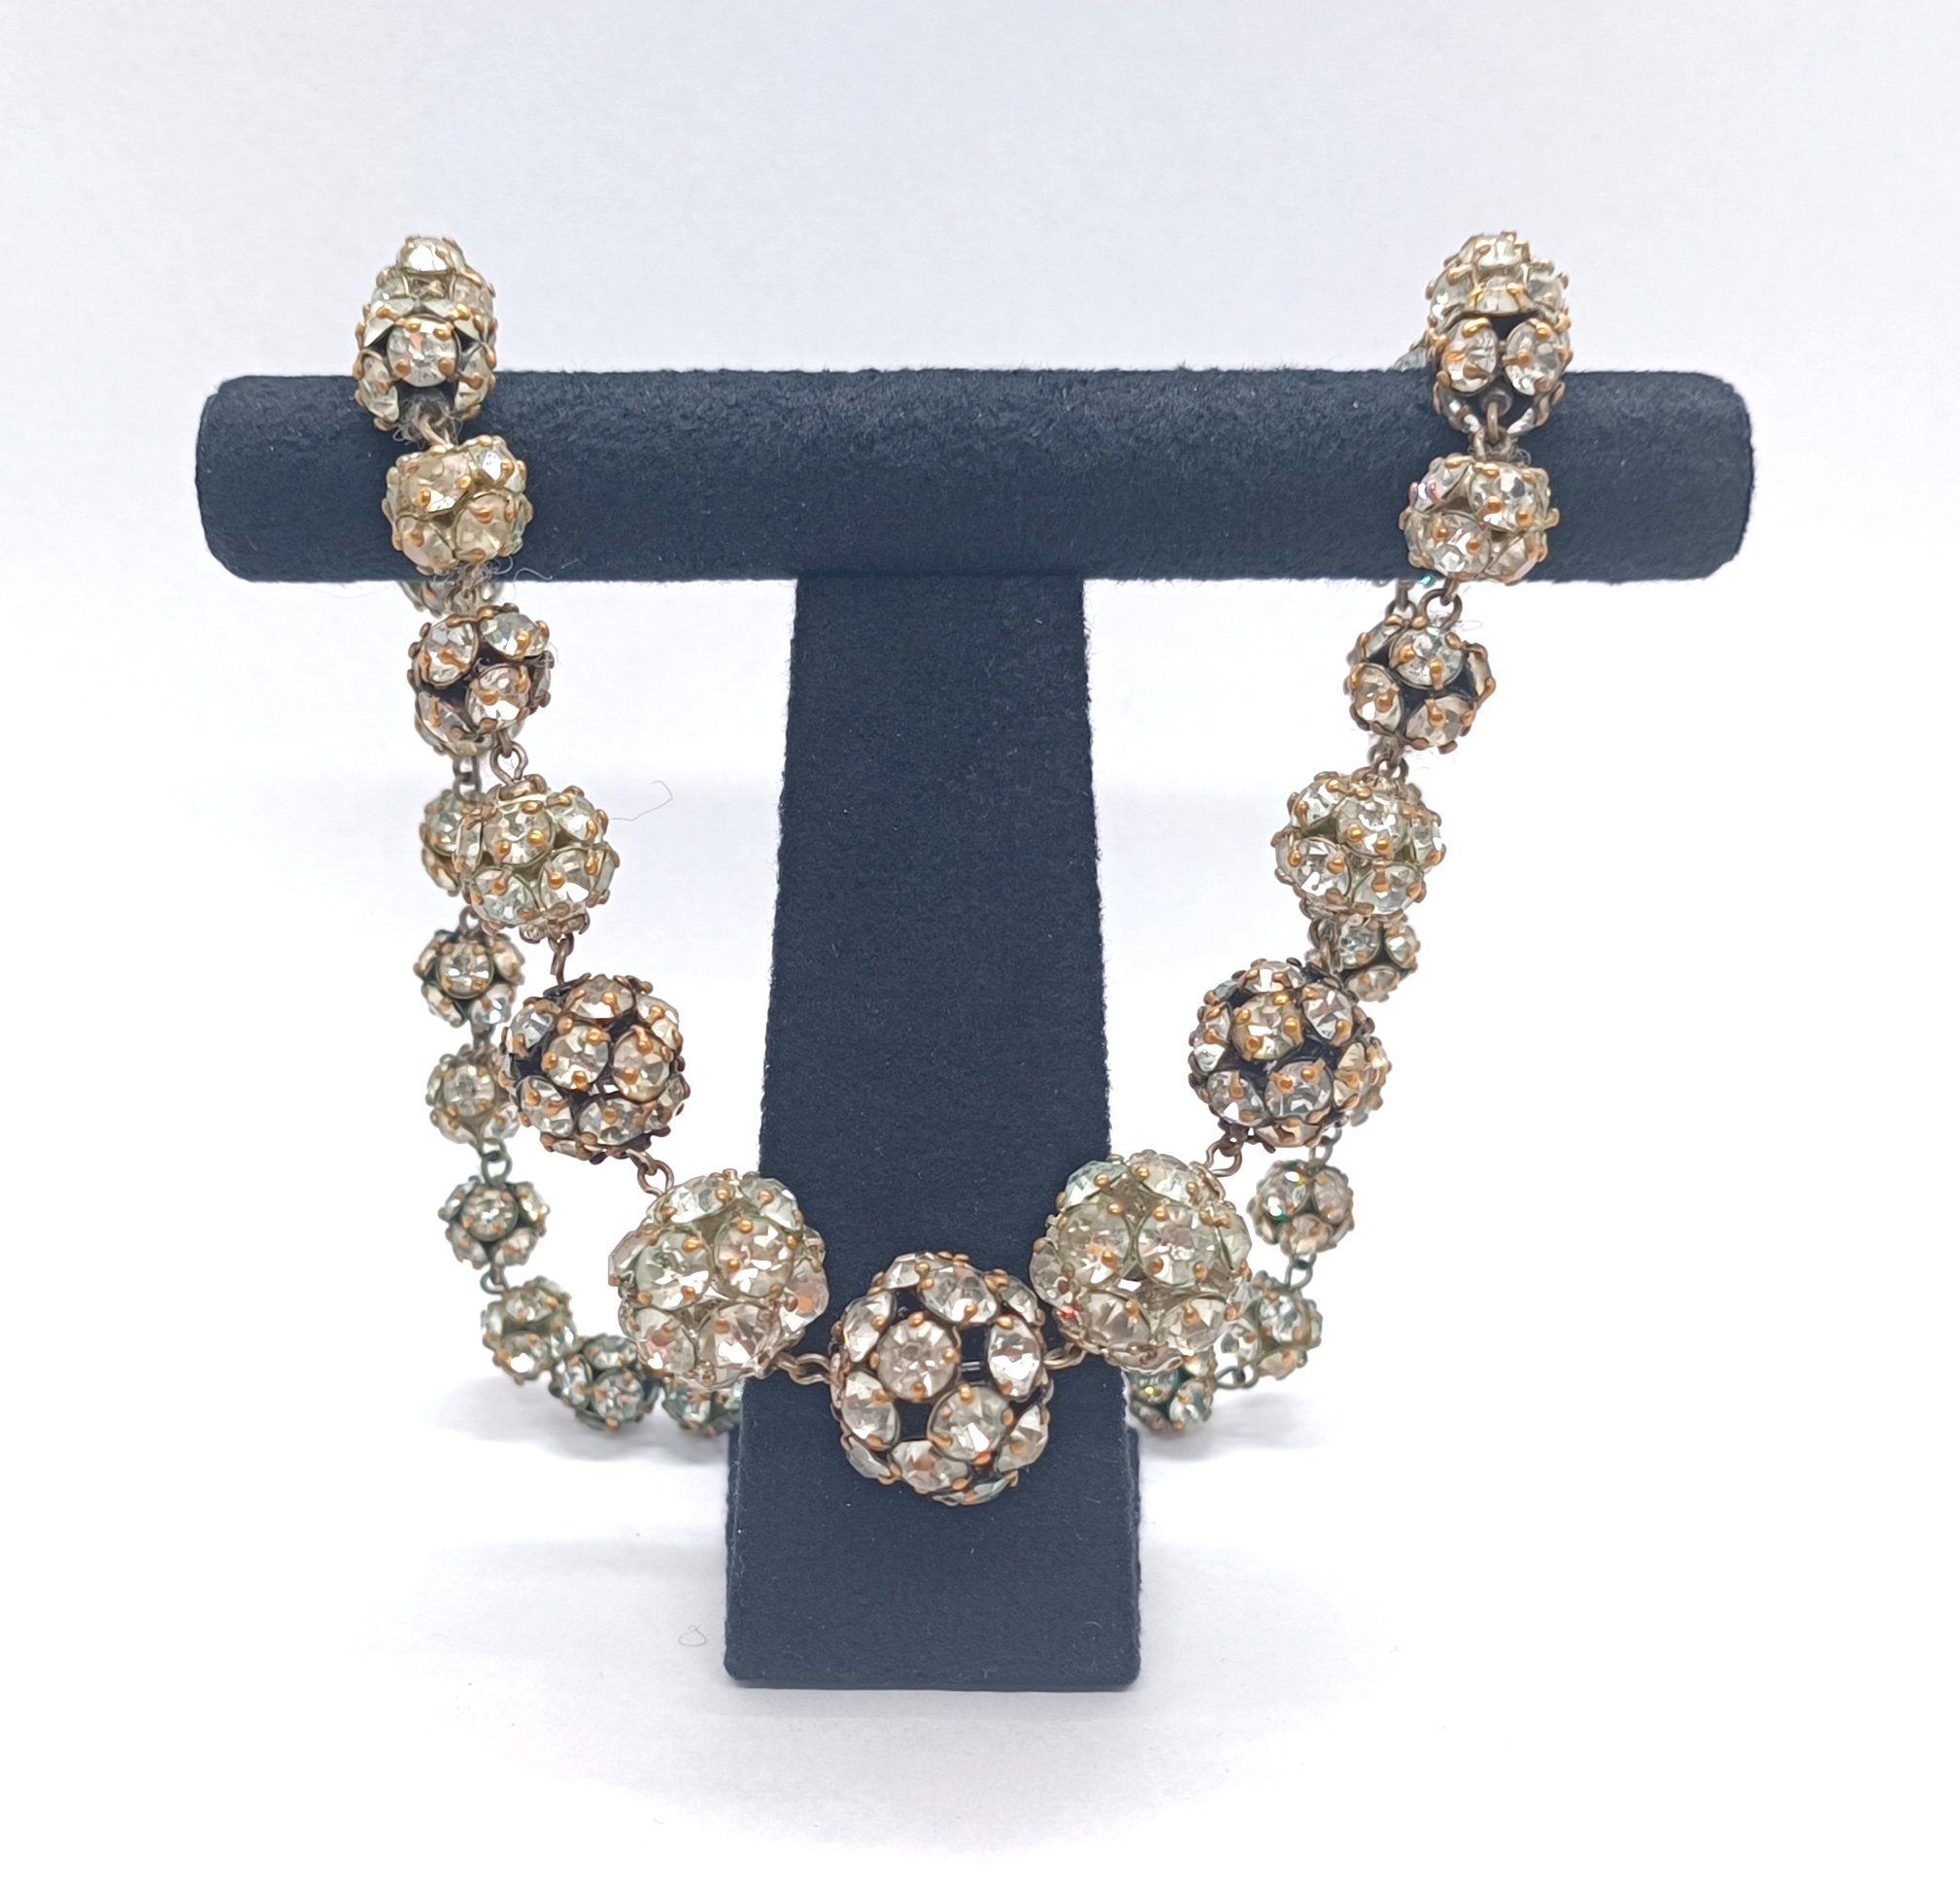 Bižuterní náhrdelník - 1